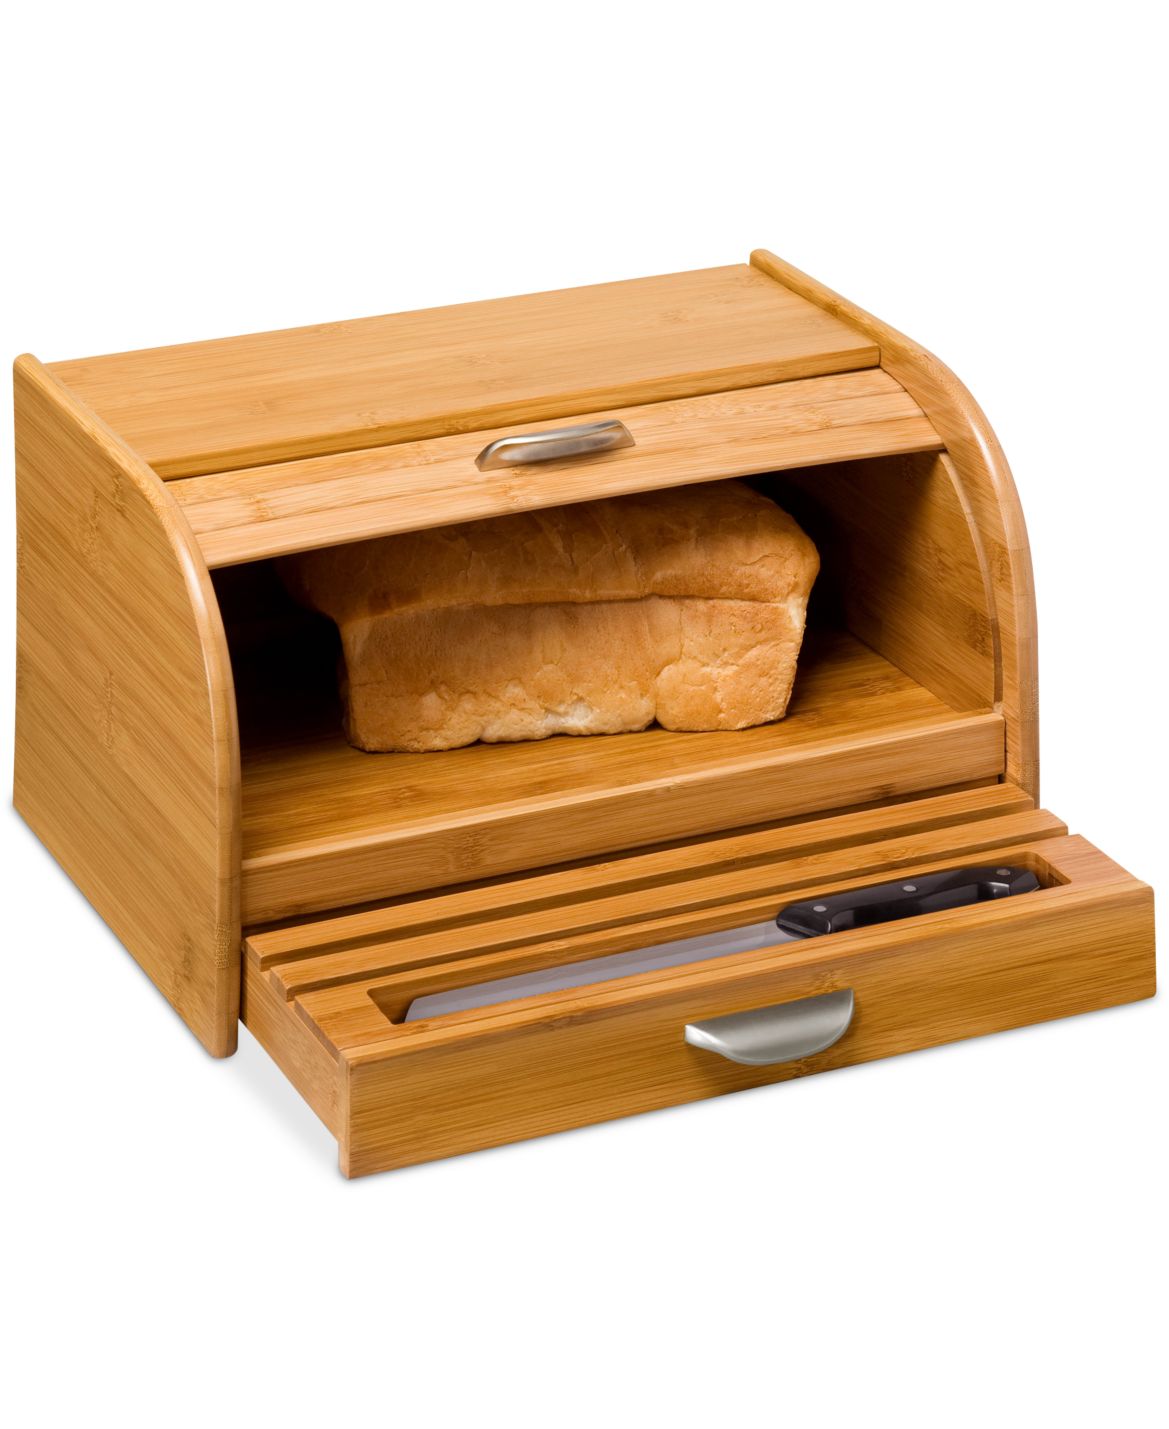 Bread Box. 